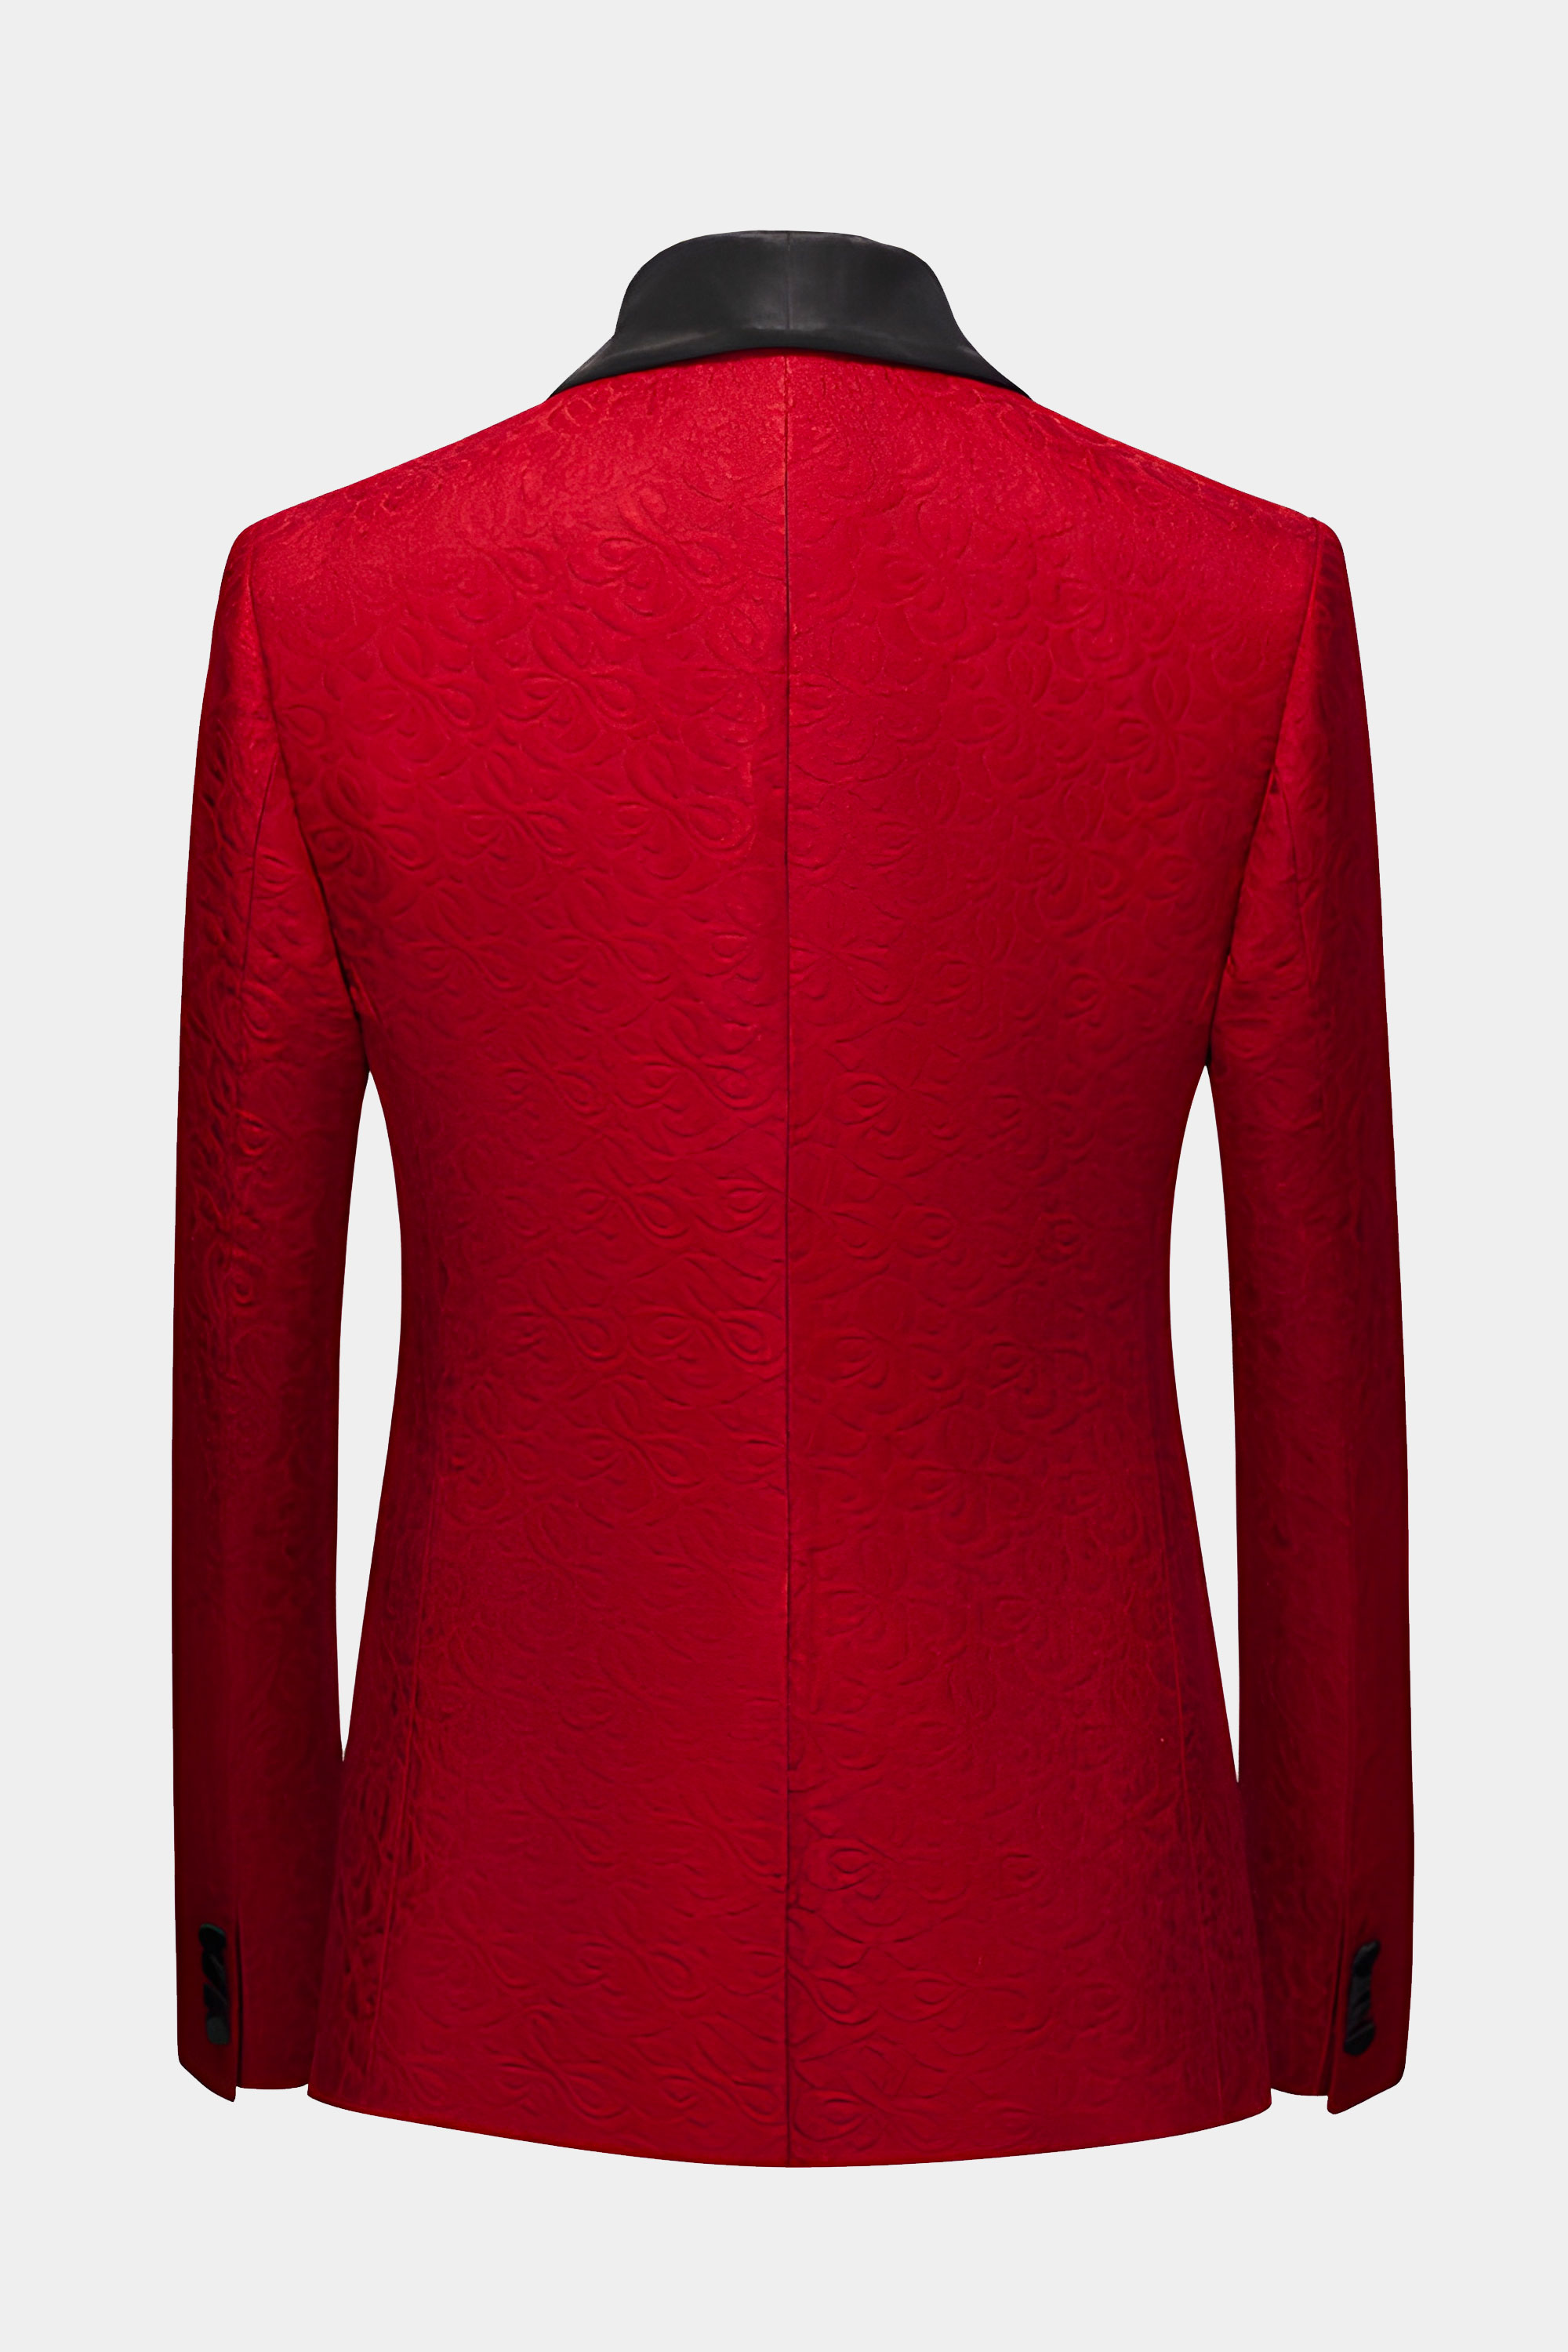 Apple-Red-Tuxedo-Jacket-from-Gentlemansguru.com